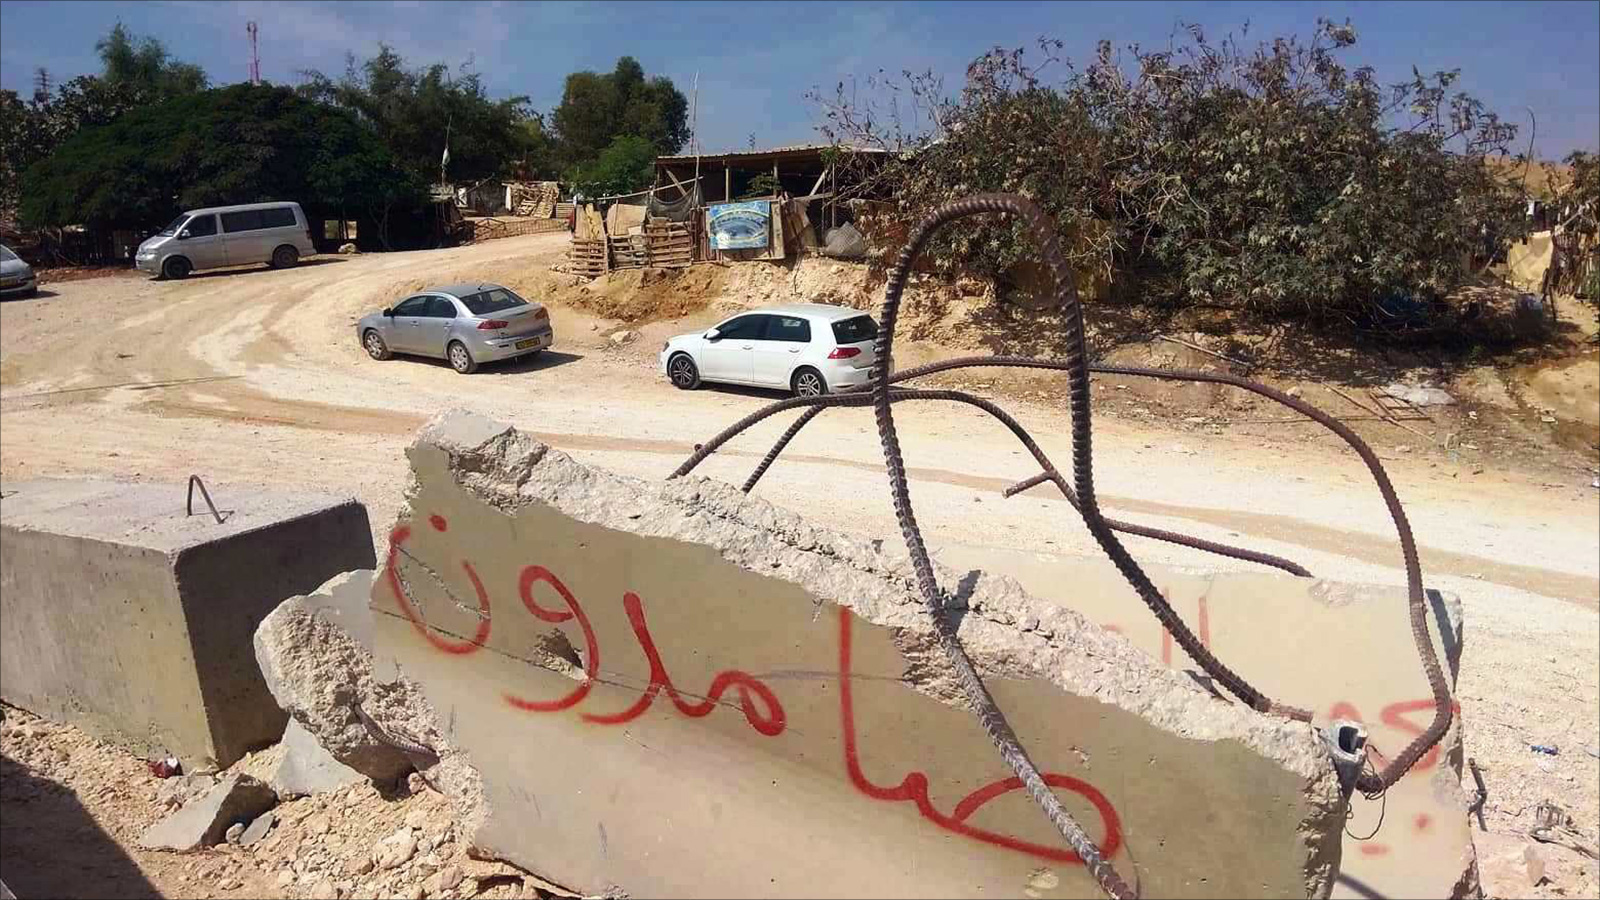  صامدون.. كتبت على مدخل قرية الخان الأحمر المهددة بالهدم الإسرائيلي وترحيل 200 فلسطيني يعيشون فيها منذ ستة عقود (الجزيرة)